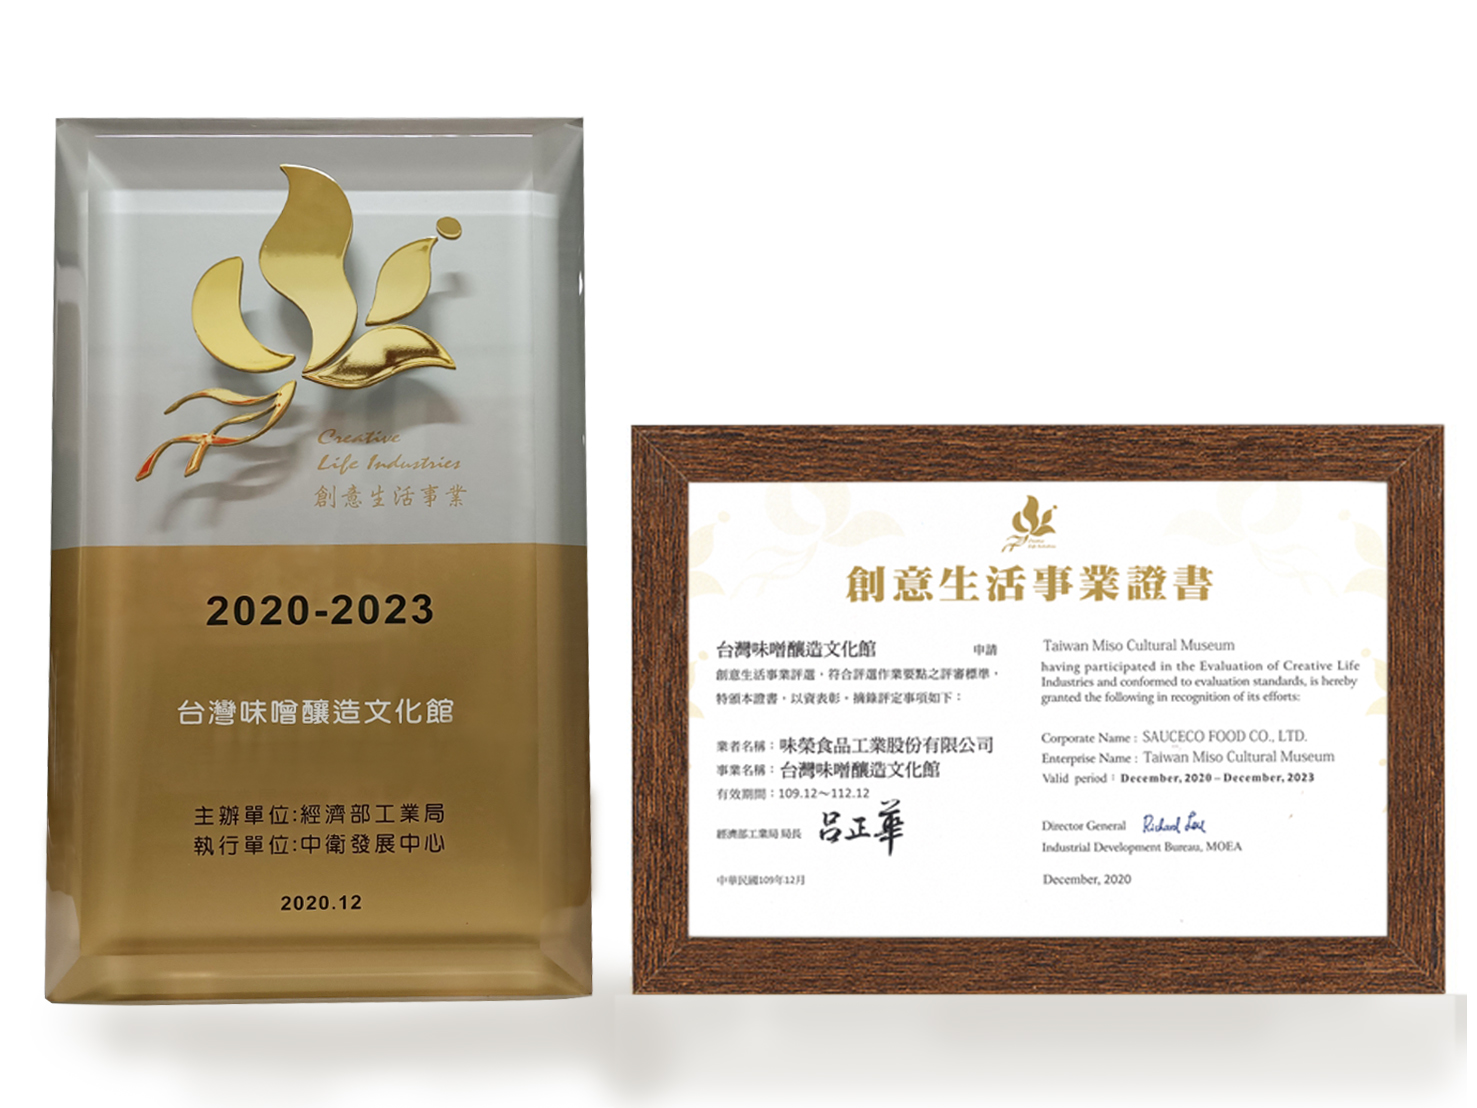 2020-2023 台湾味噌醸造文化センターがクリエイティブライフセレクションに合格